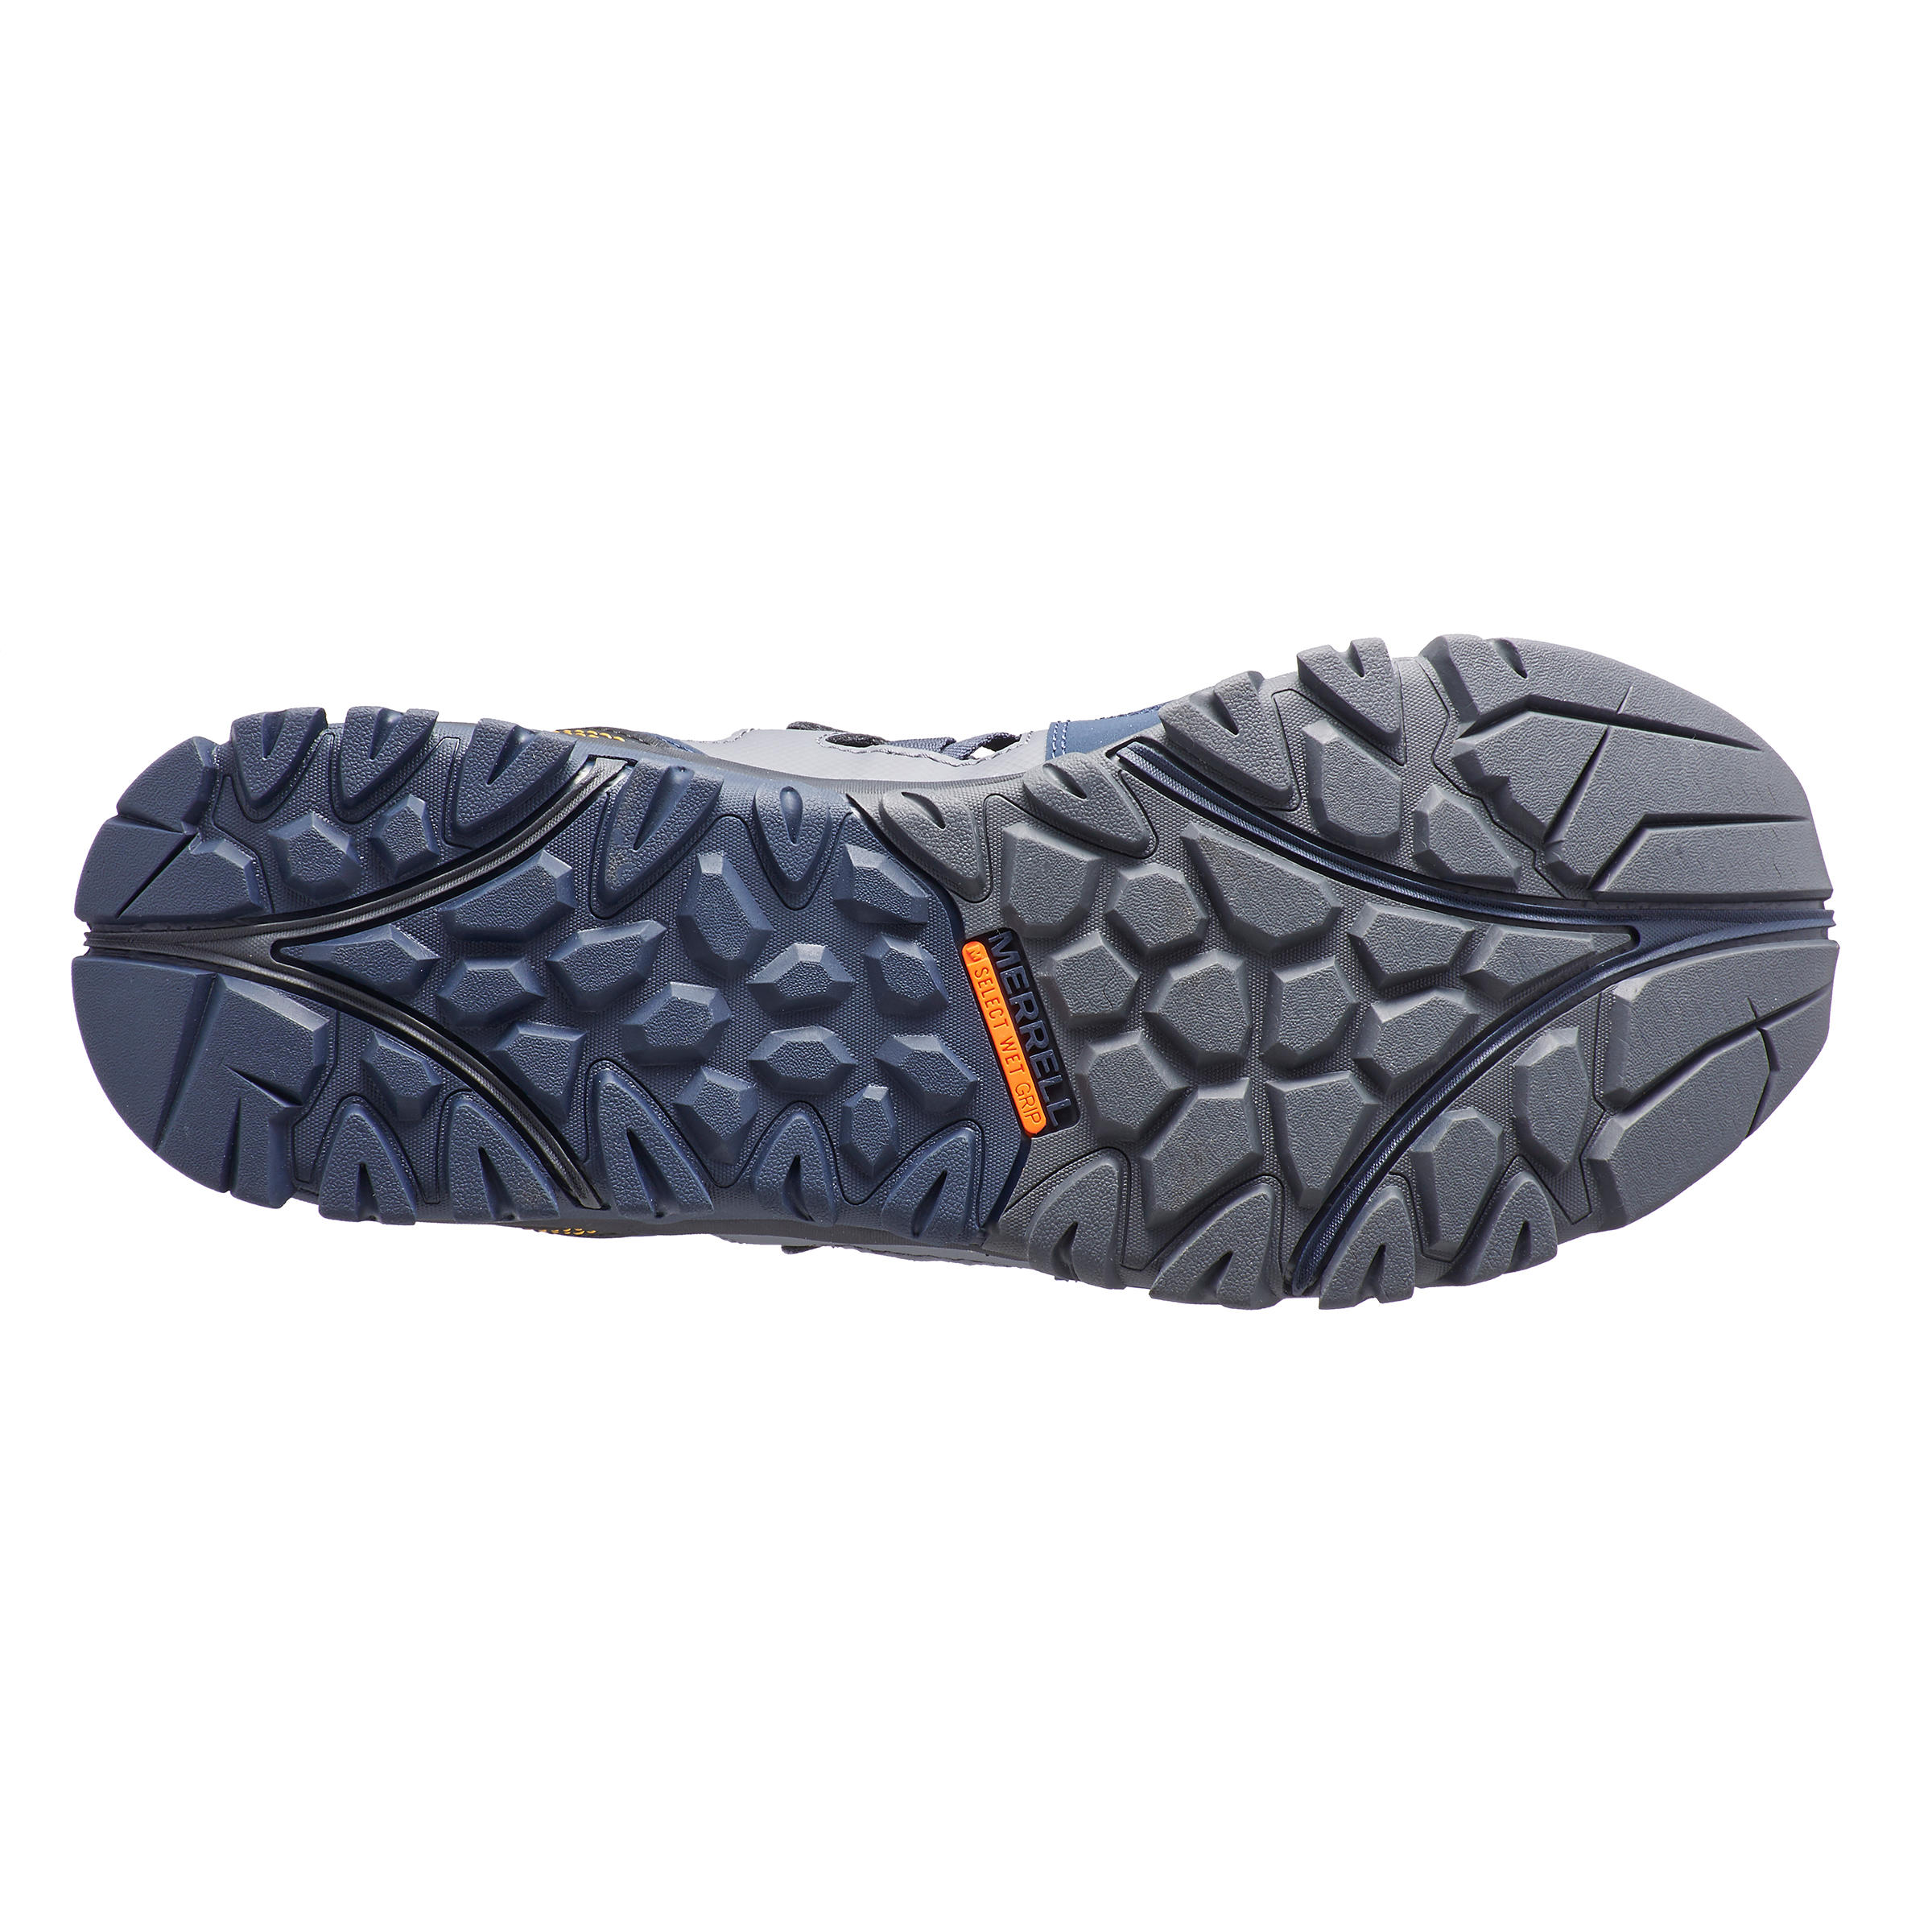 Men's walking sandals - Merrell Tetrex Crest - Blue 5/5